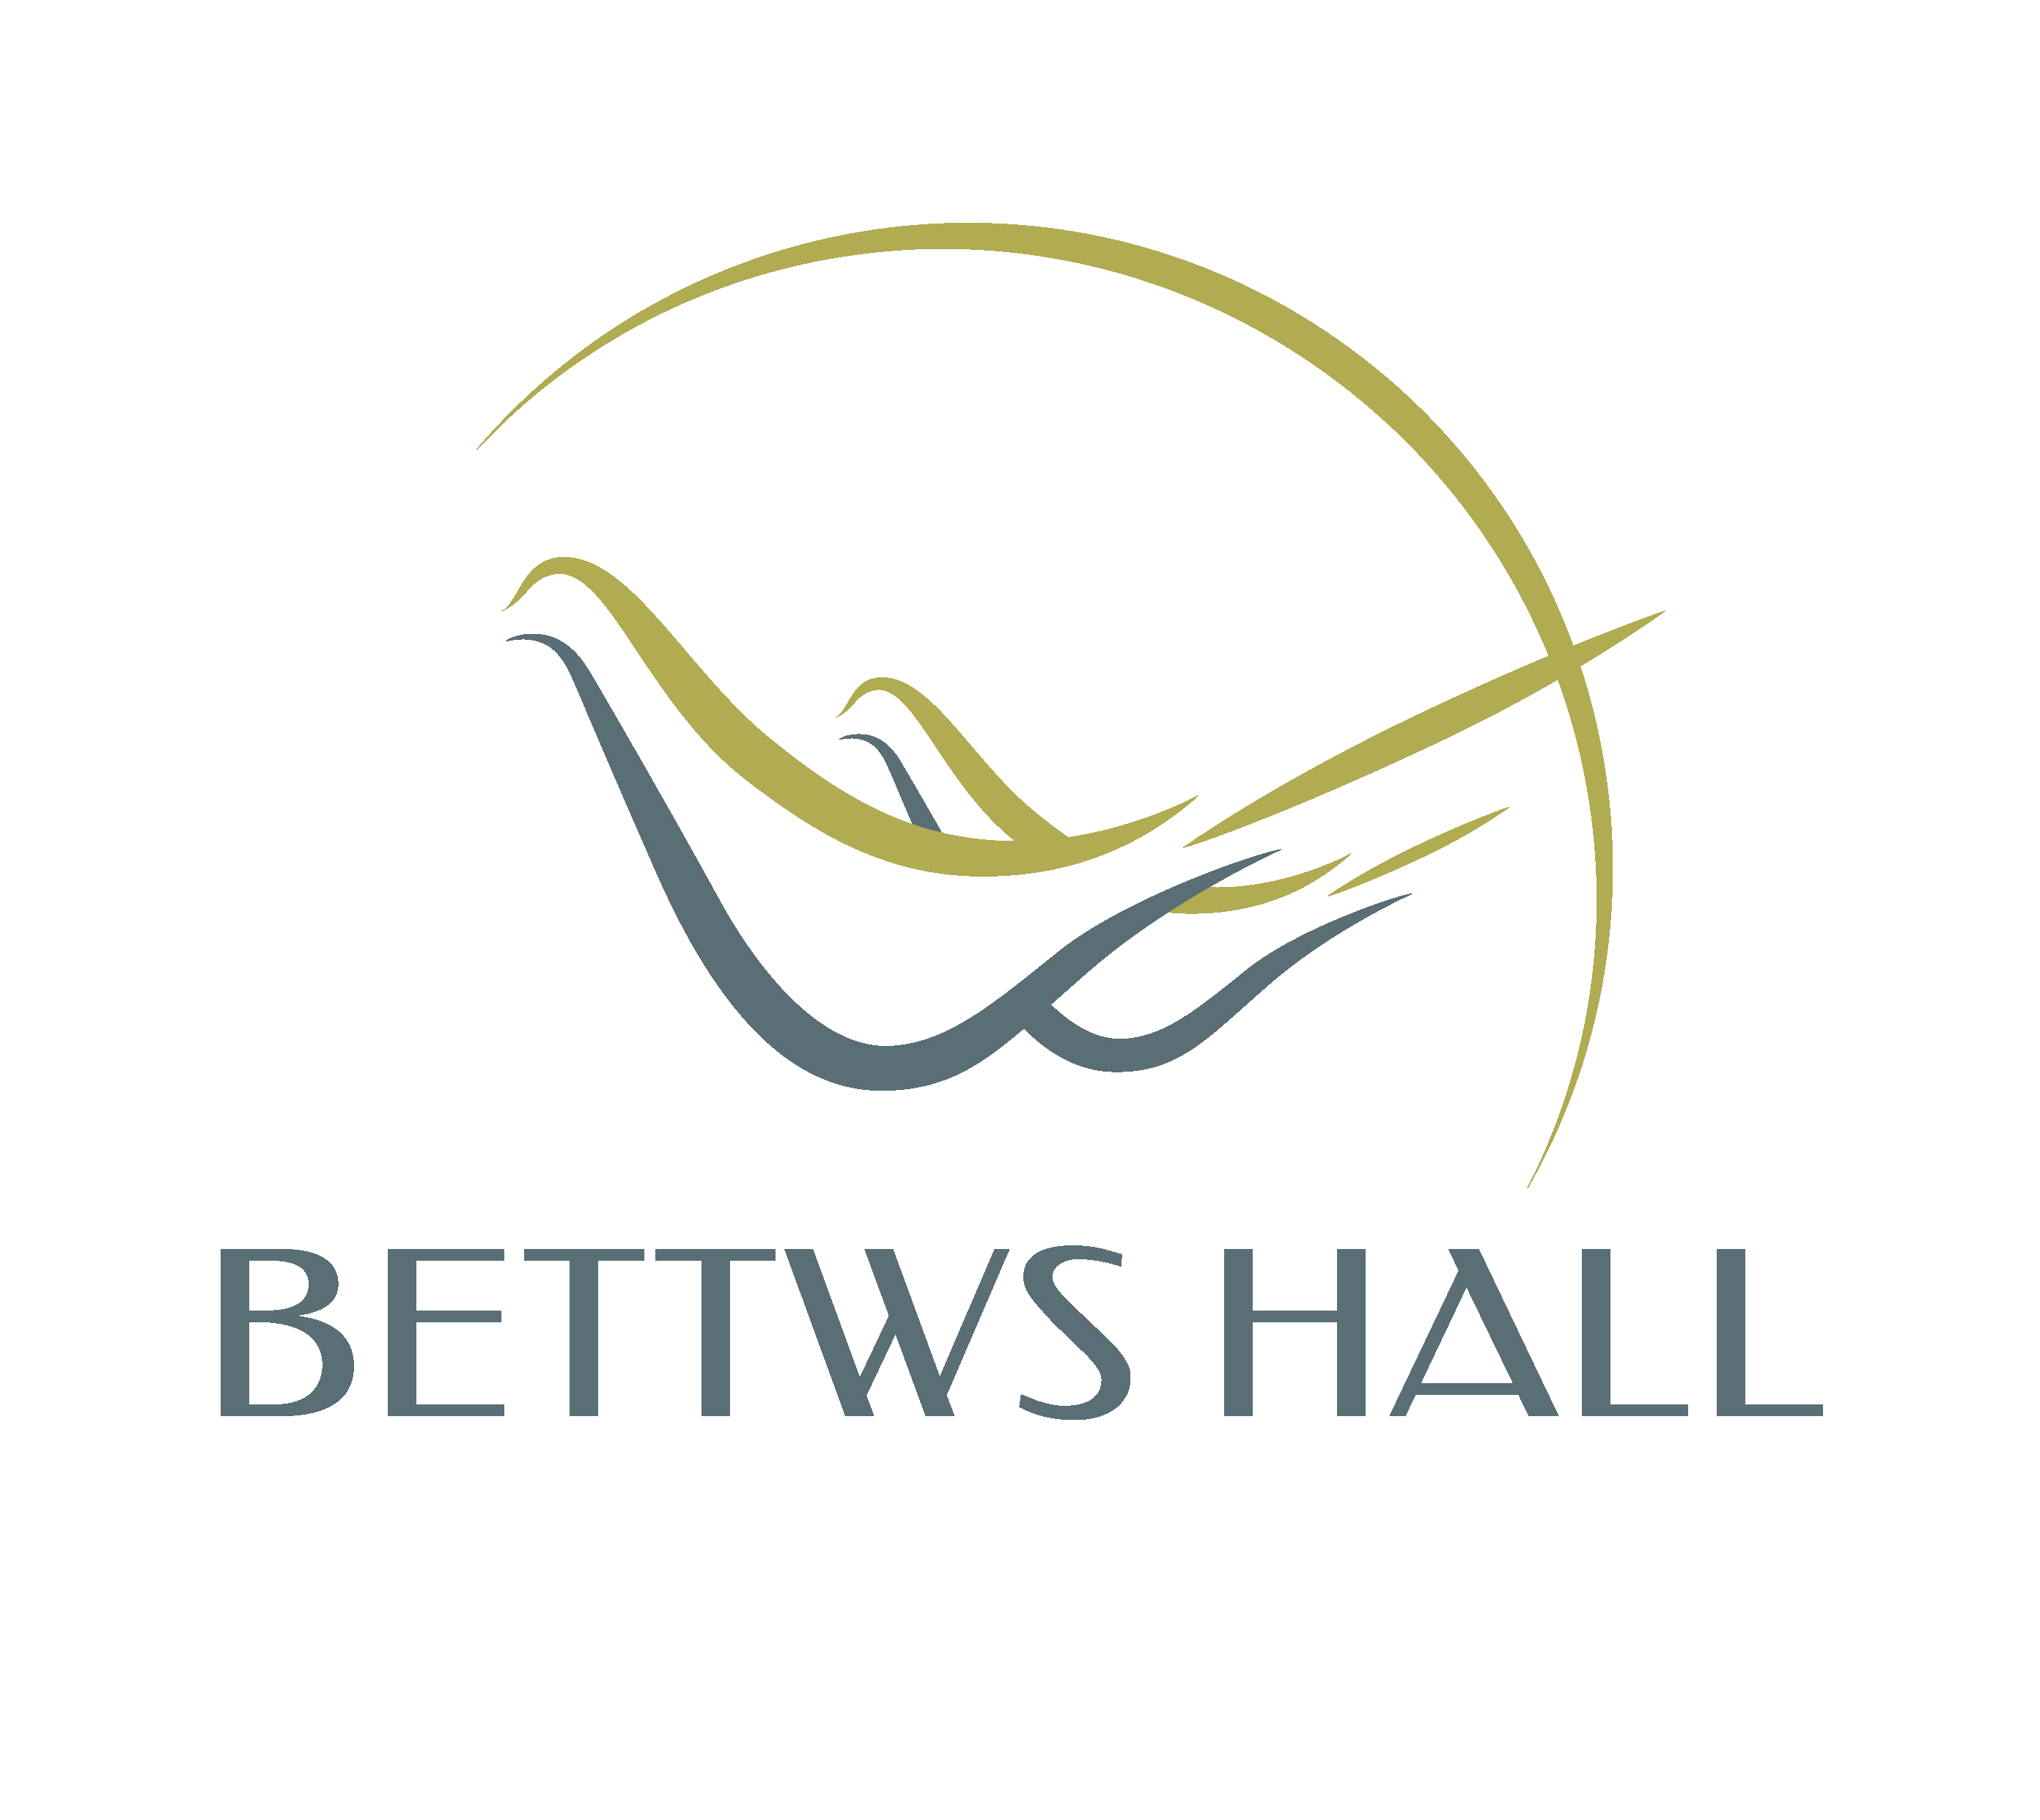 Bettws Hall